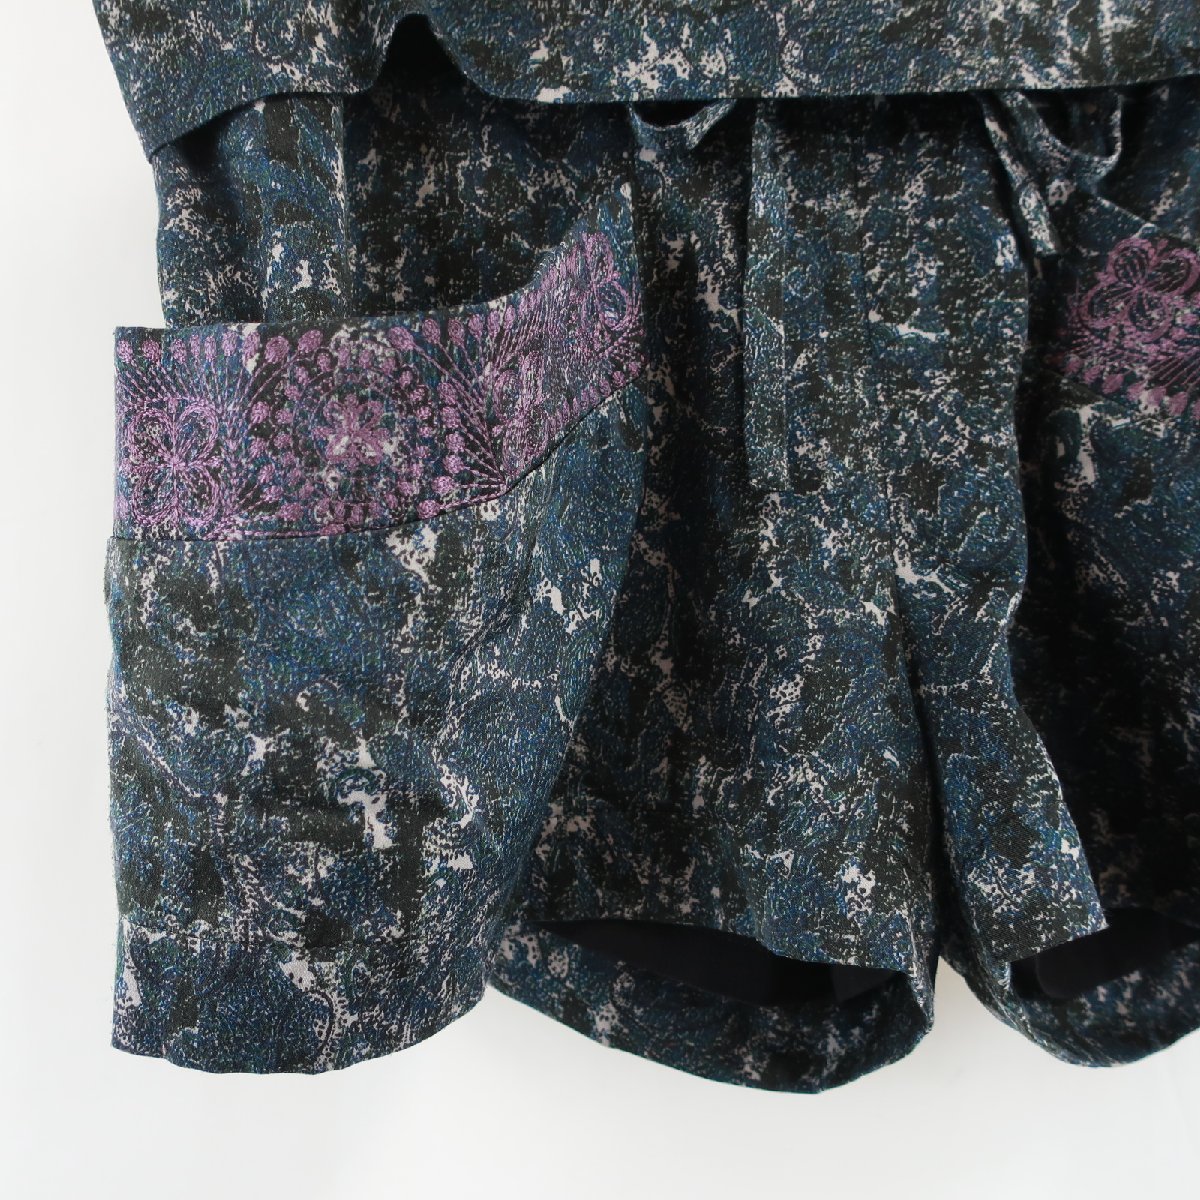 Archi ANOTHEREDITION UNITED ARROWS Arky общий рисунок вышивка лента шорты сделано в Японии темно-синий лиловый темно-синий фиолетовый женский KB1703-309